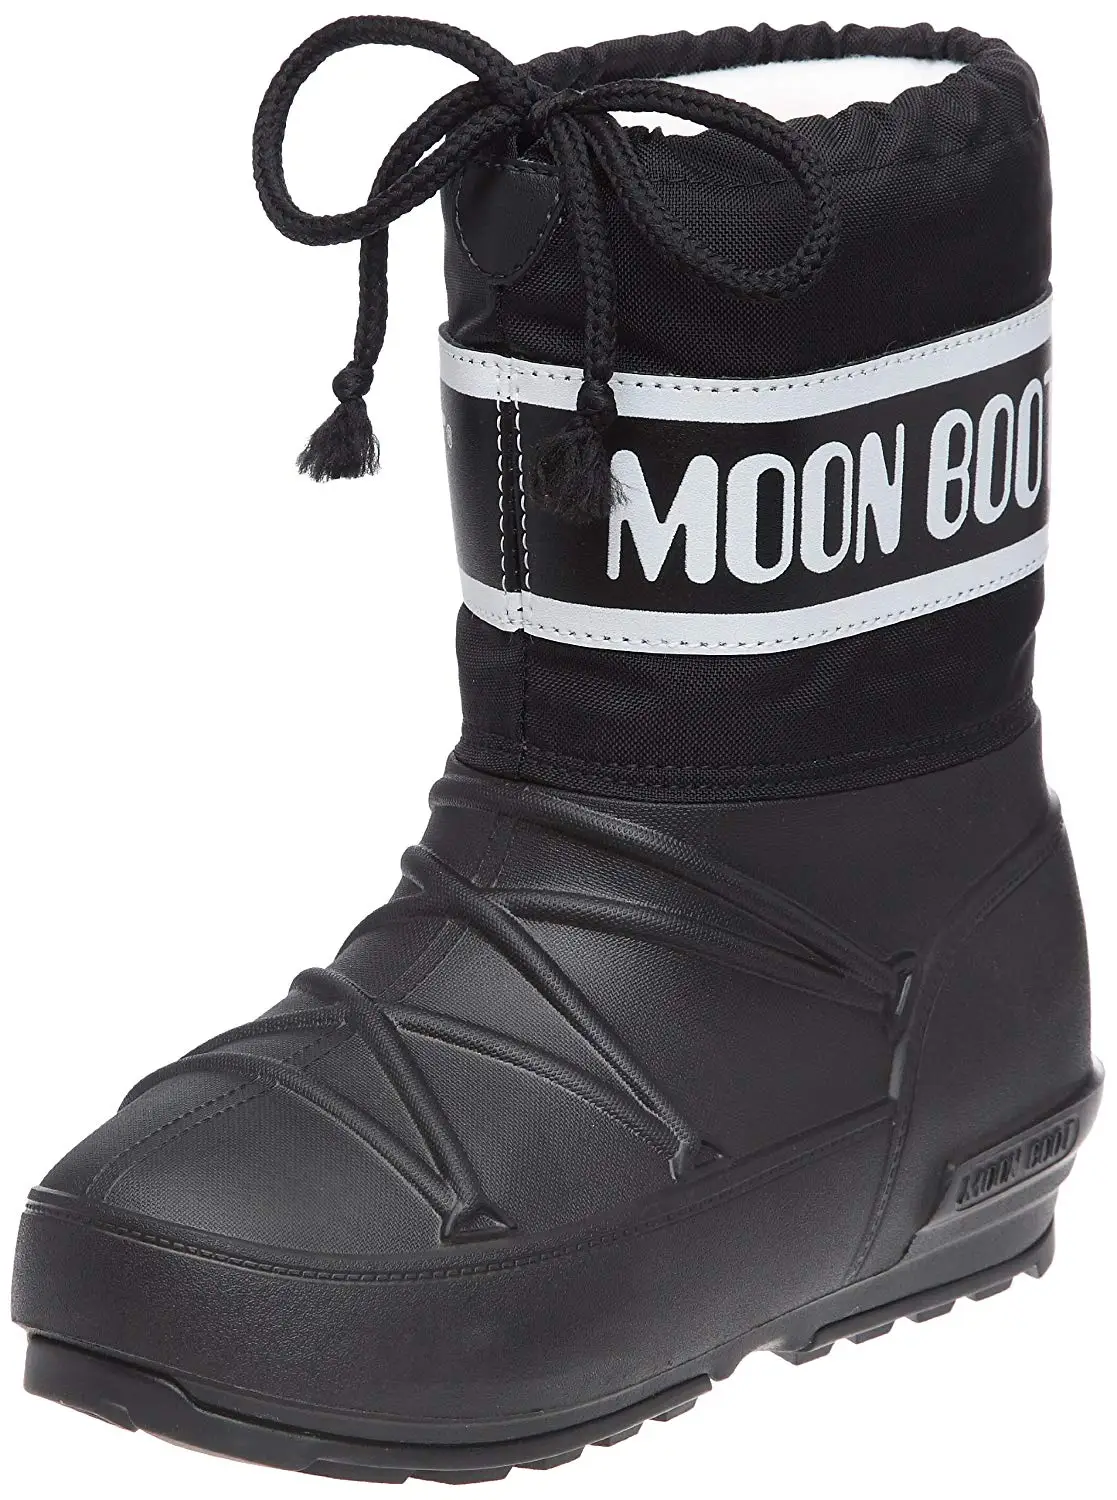 Cheap Moon Boot, find Moon Boot deals 